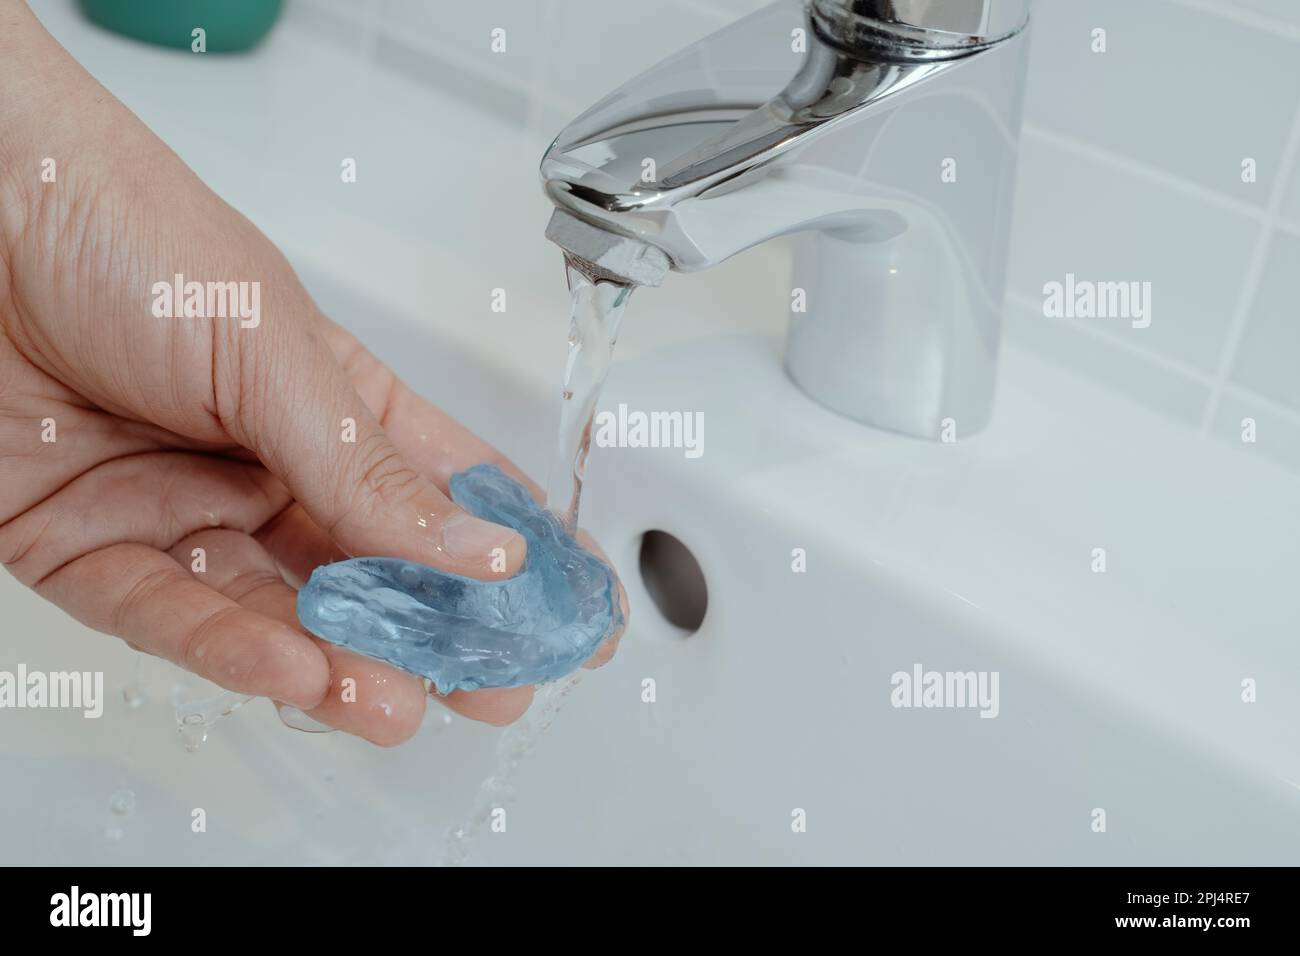 un uomo risciacqua la sua stecca occlusale blu sotto un flusso di acqua di rubinetto nel suo lavandino del bagno Foto Stock